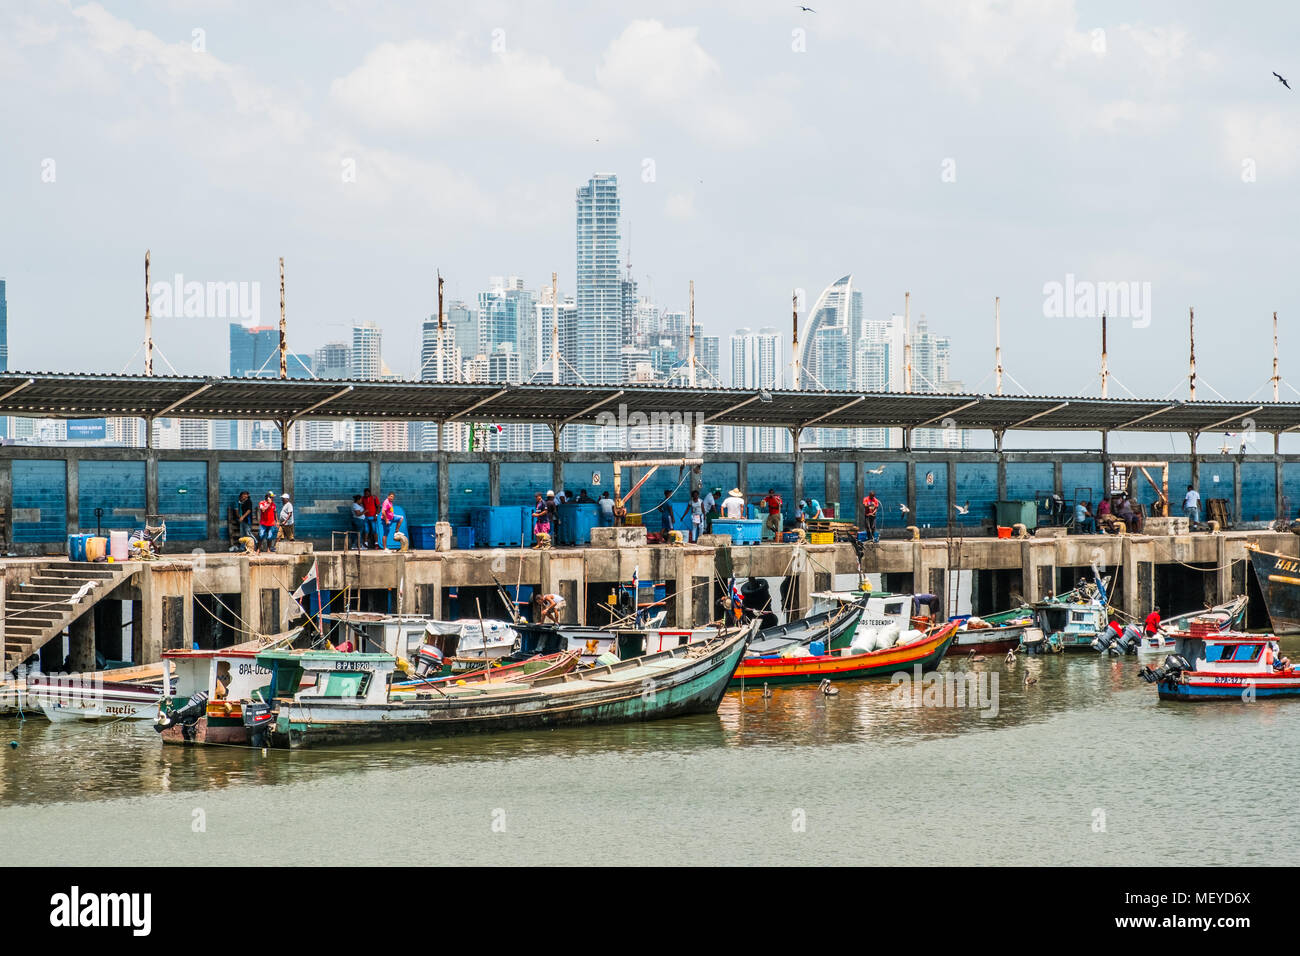 Panama City, Panama - März 2018: Fischer und Boote auf dem Fischmarkt/Hafen und City Skyline, Panama City. Stockfoto